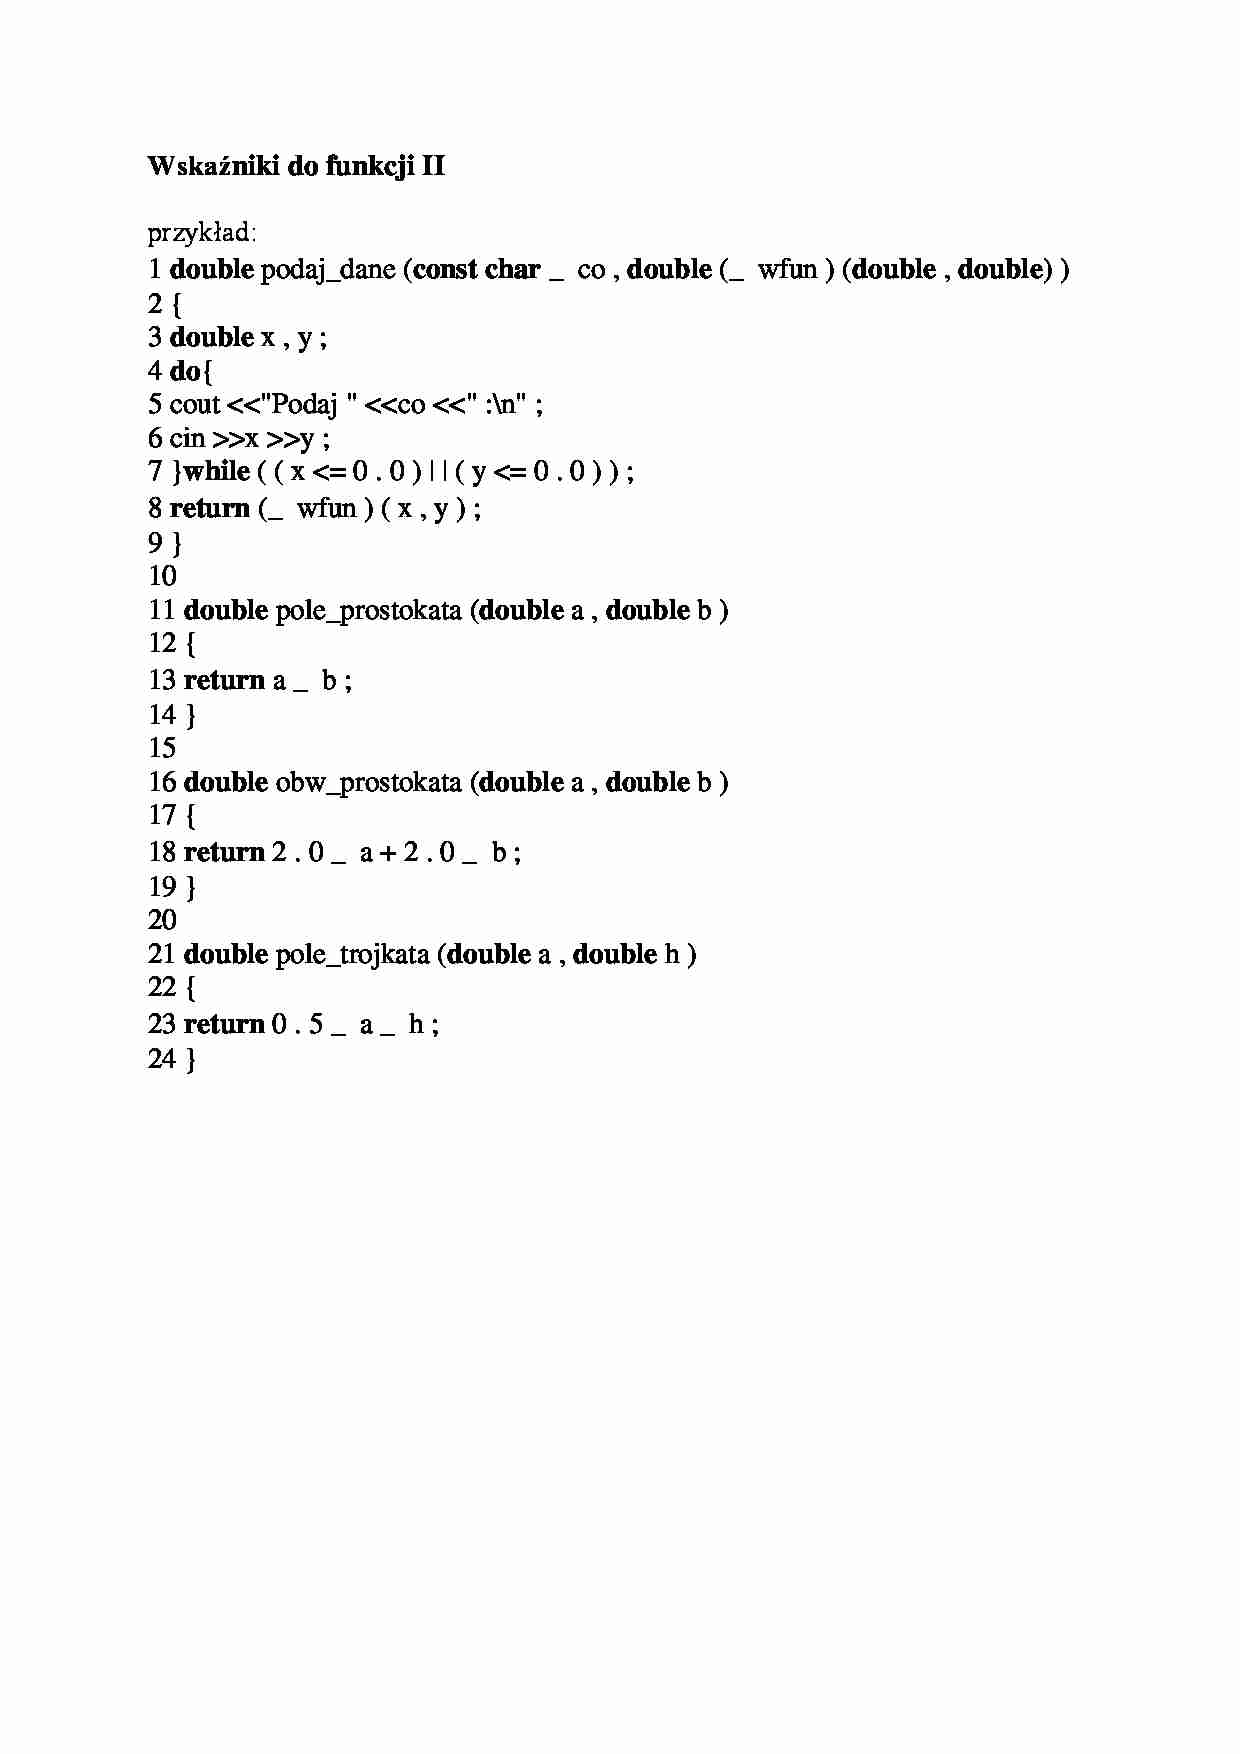 Wskaźniki do funkcji II-opracowanie - strona 1